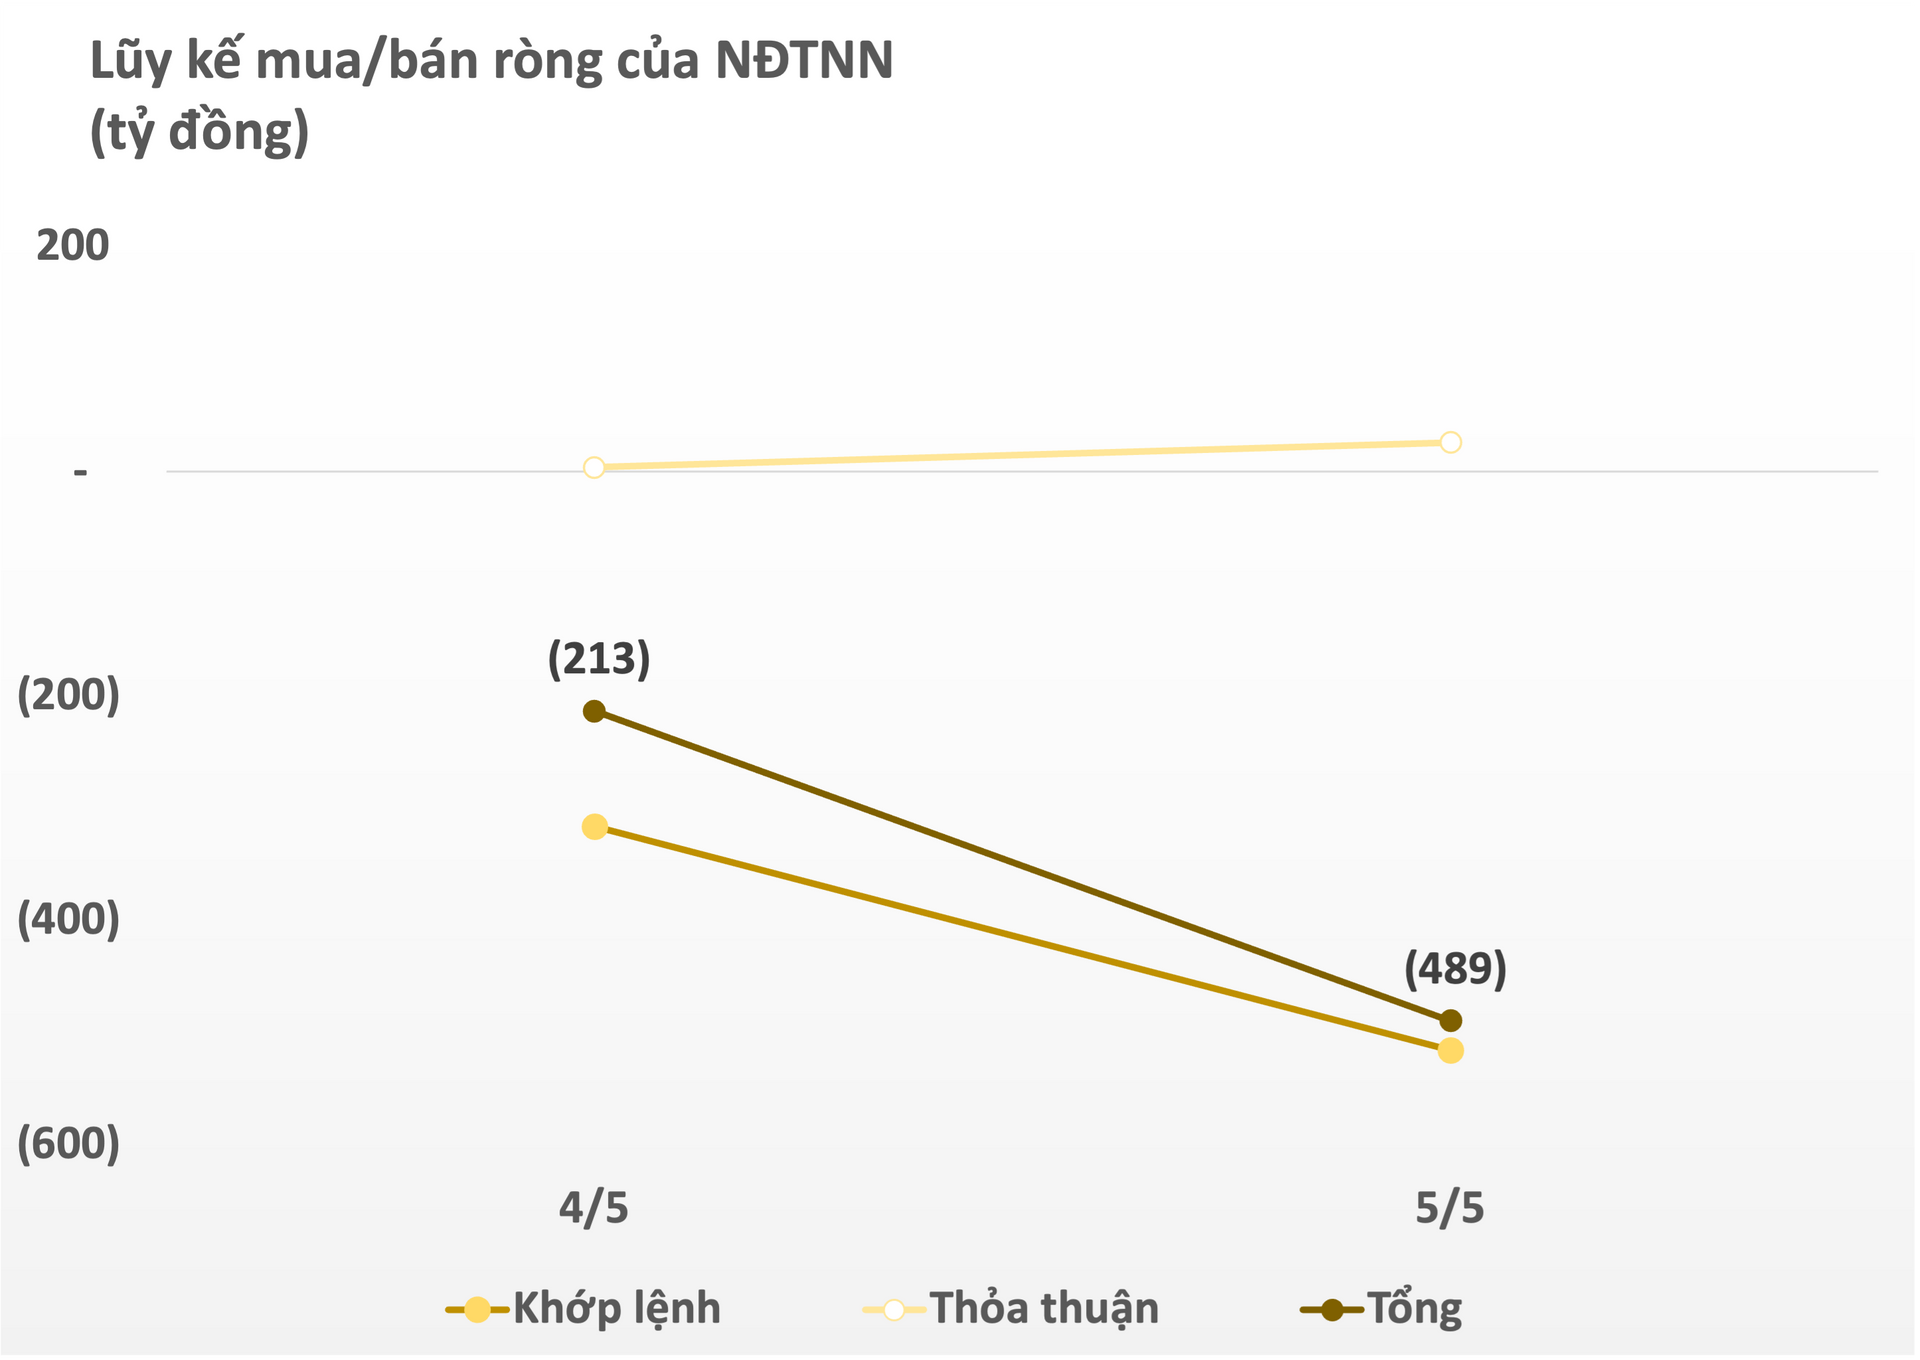 Khối ngoại tiếp tục bán ròng sau kỳ nghỉ lễ, gần 500 tỷ đồng cổ phiếu Việt bị "xả".